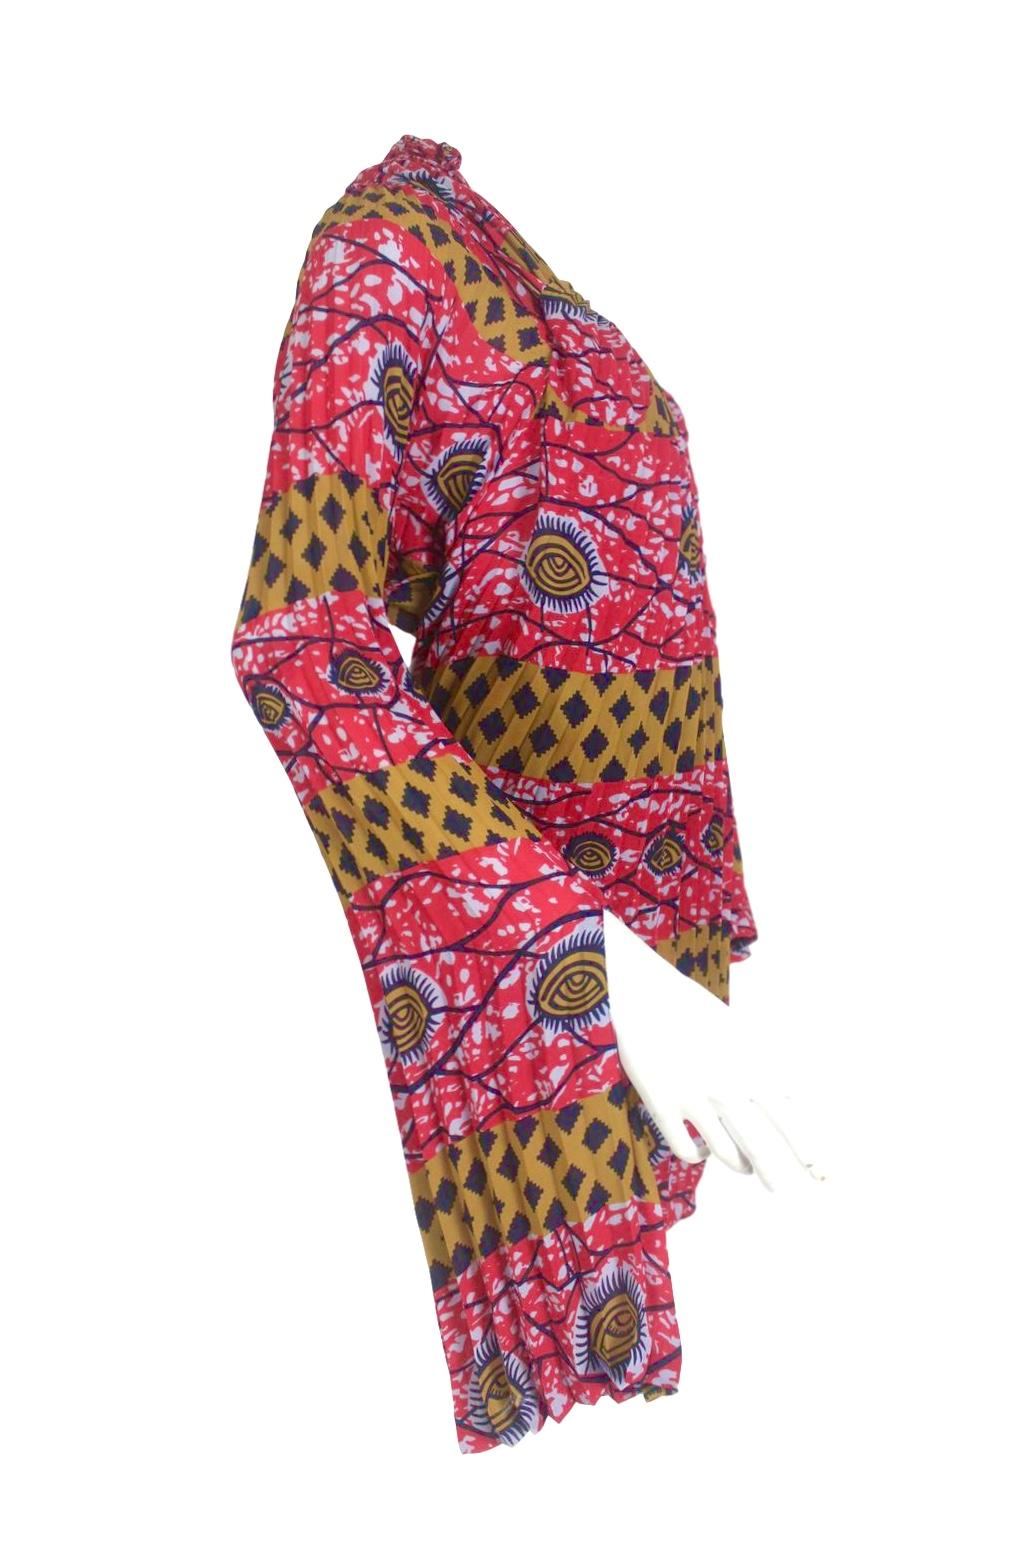 Comme des Garçons Junya Watanabe African Open Back Print Dress AD 2009 For Sale 6